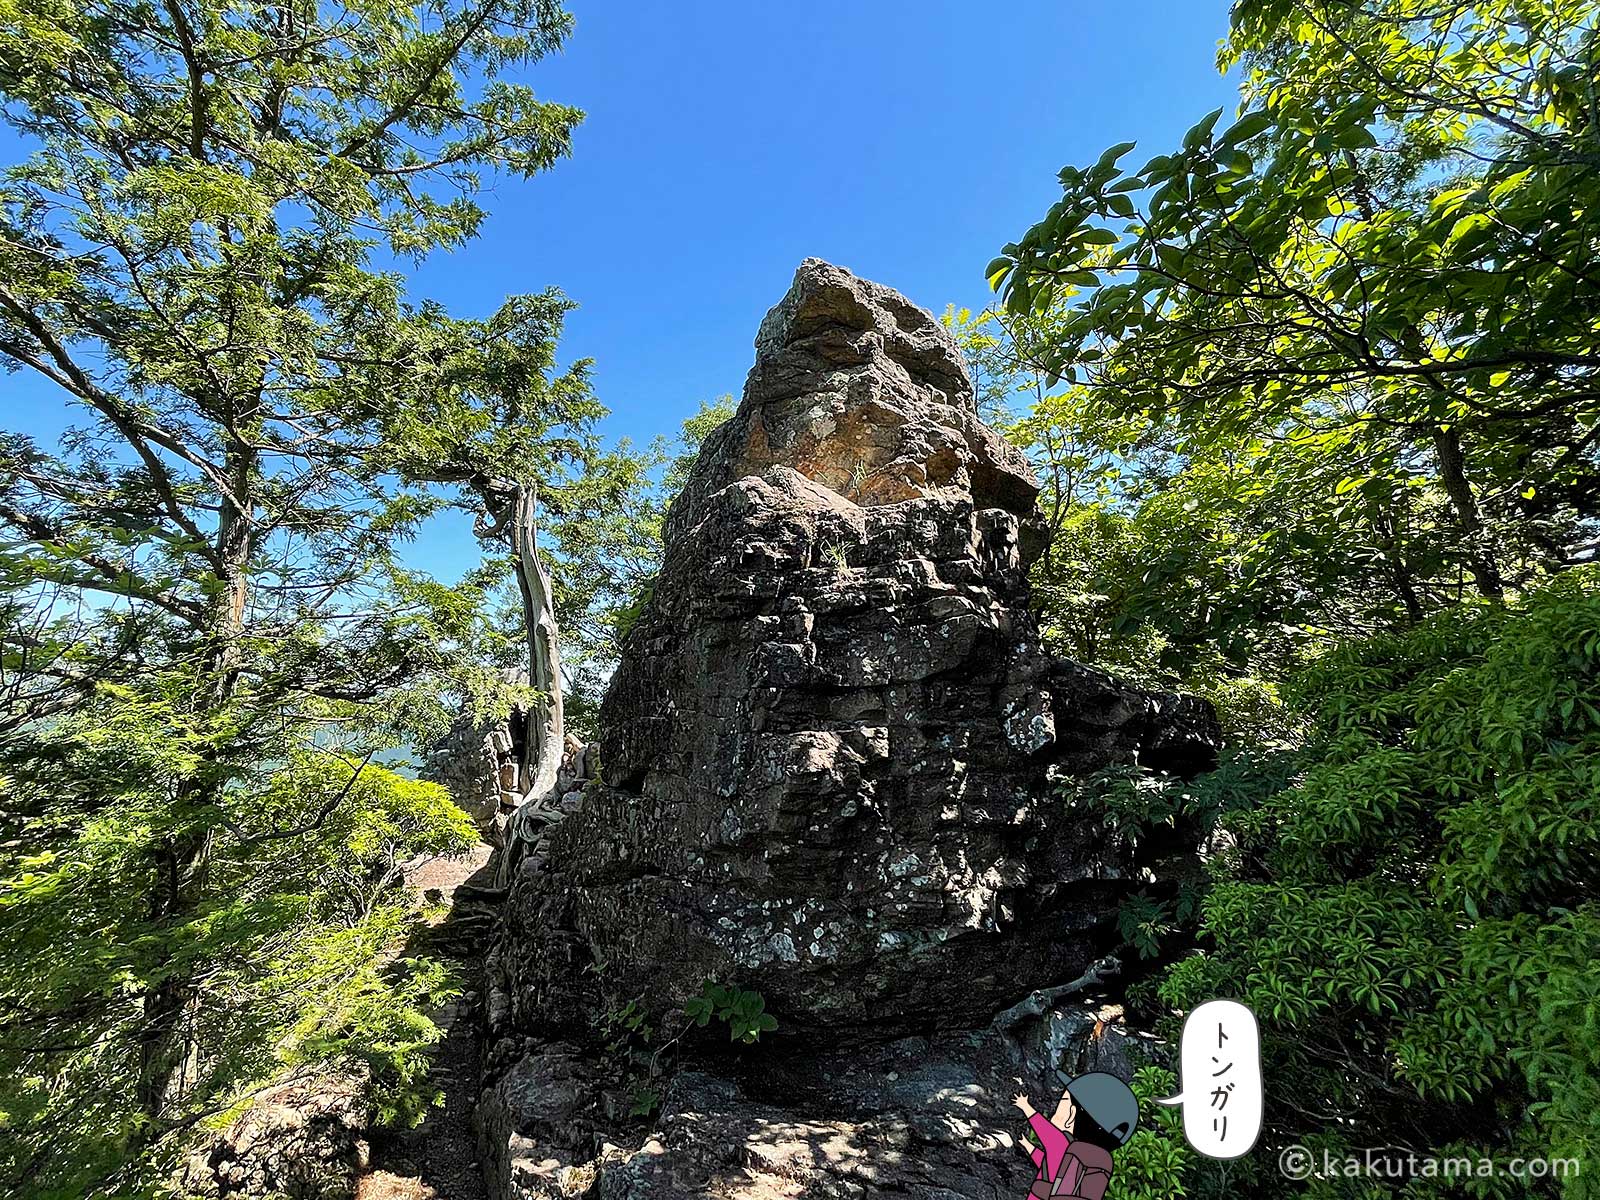 とんがった岩がある伊豆ヶ岳山頂付近の写真とイラスト